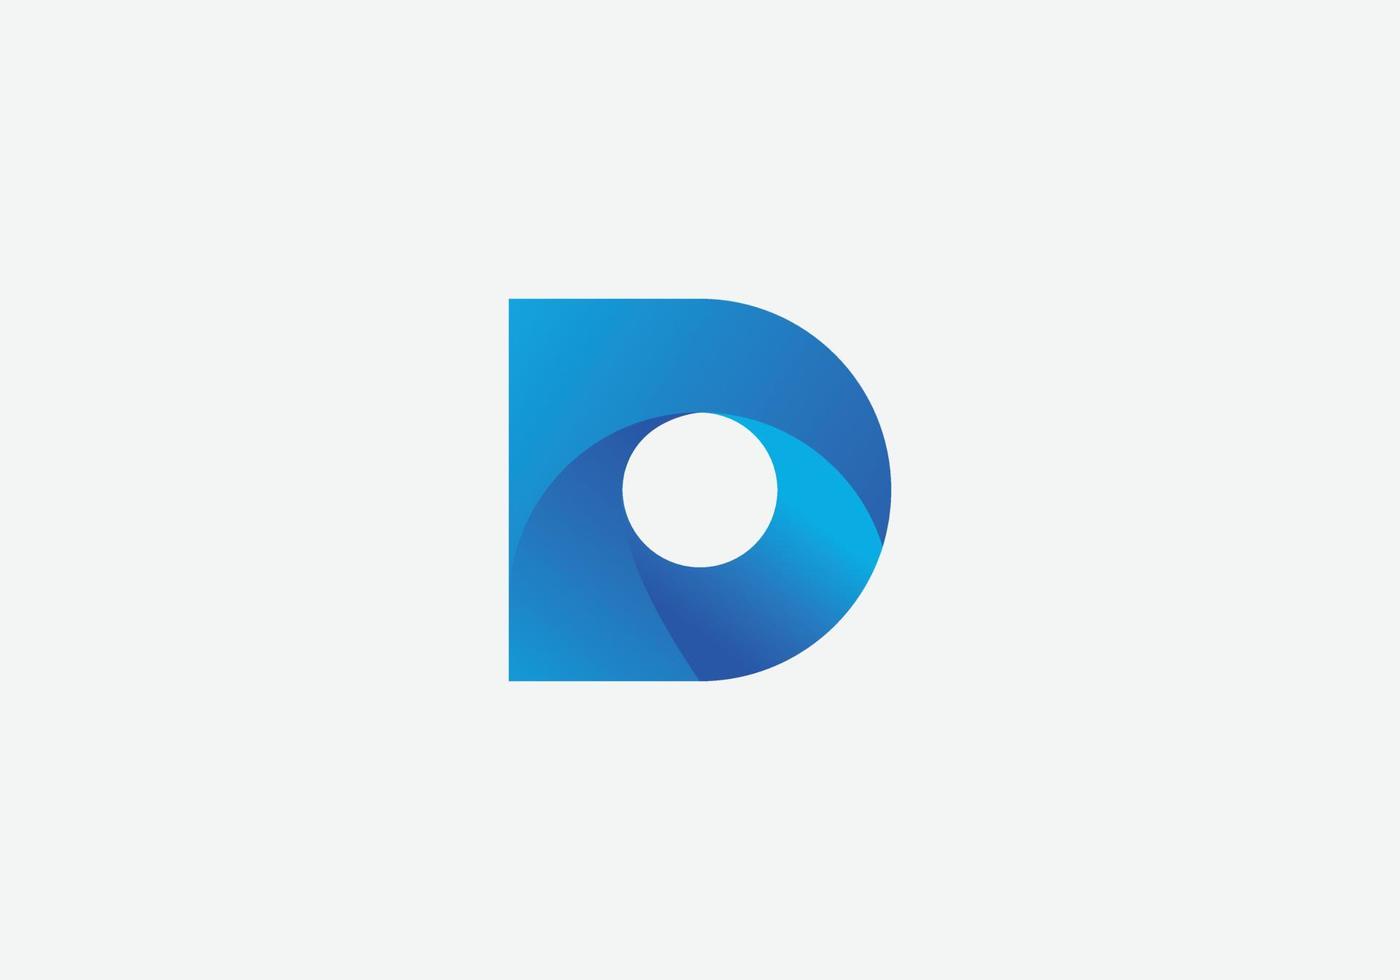 Abstract modern d letter initial tech logo design vector